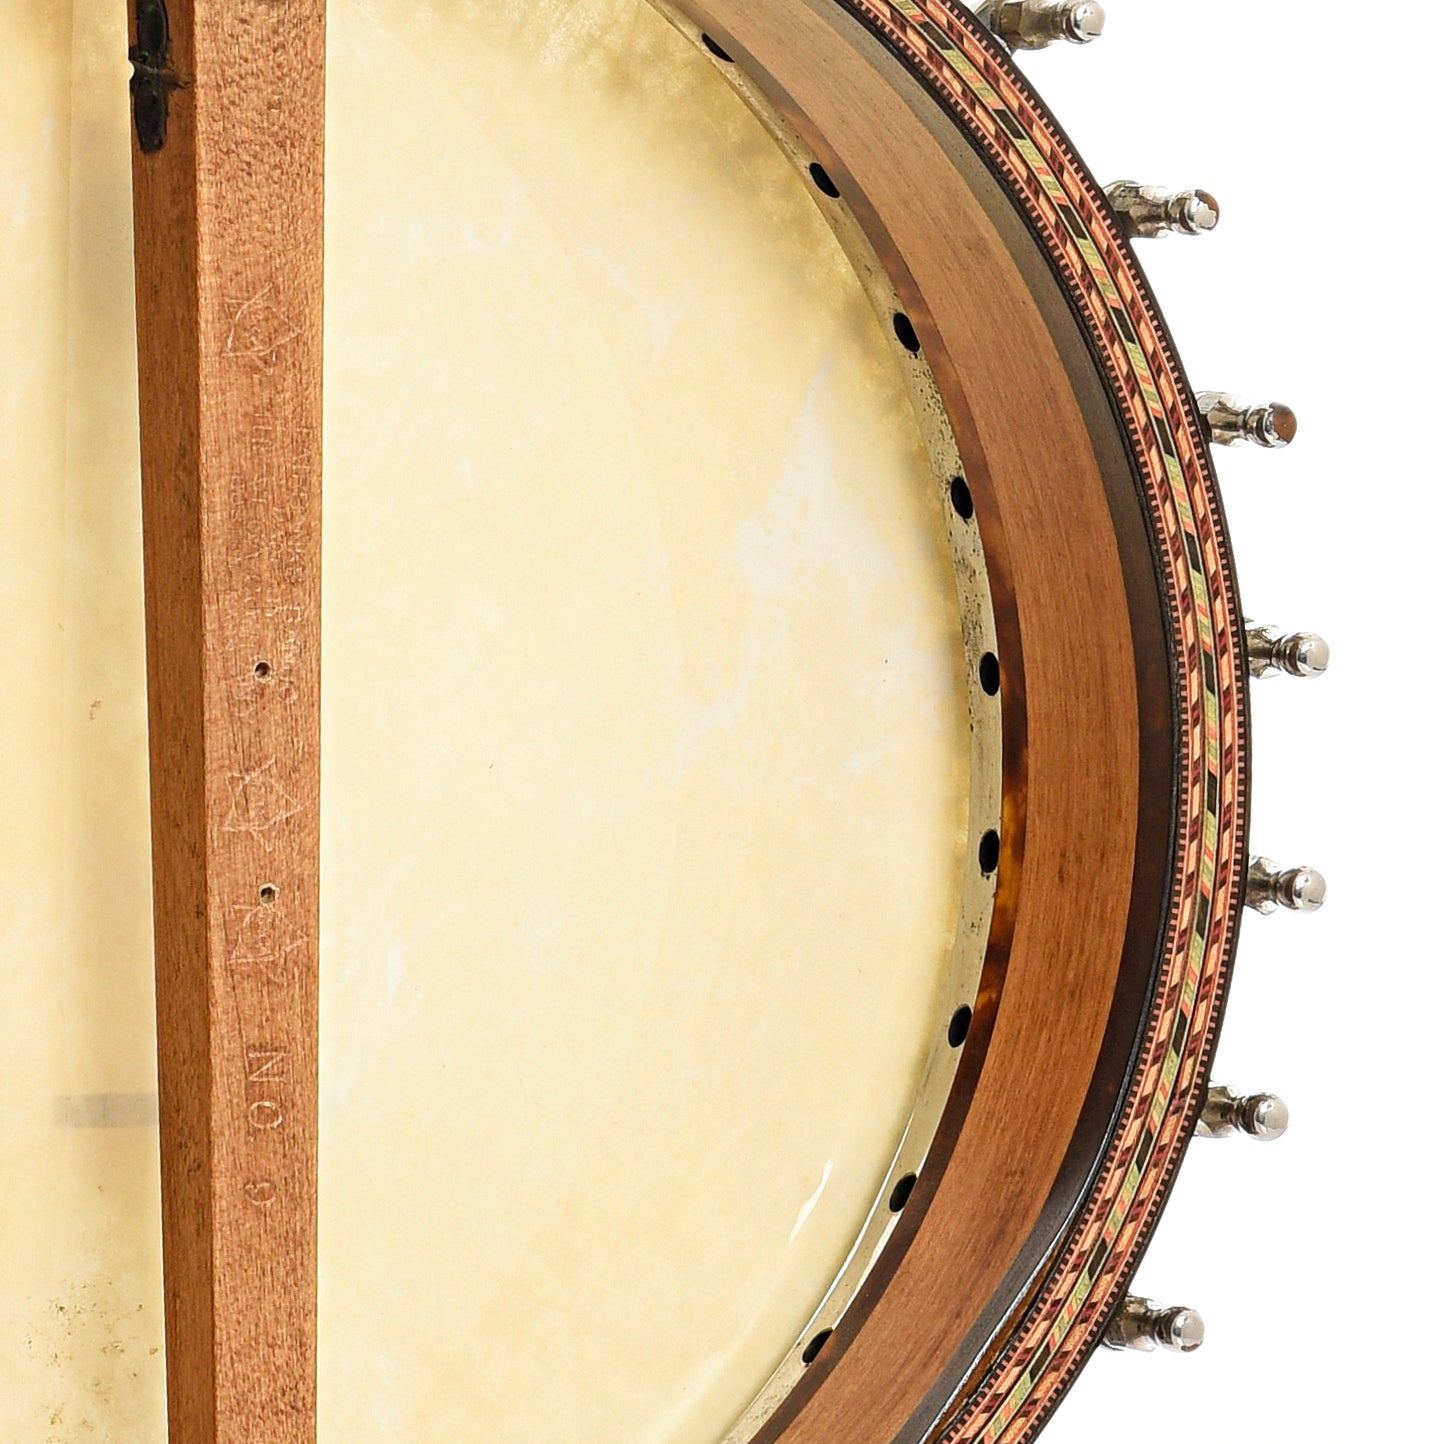 Inside rim of Vega Tubaphone No.9 Openback Banjo (1916)